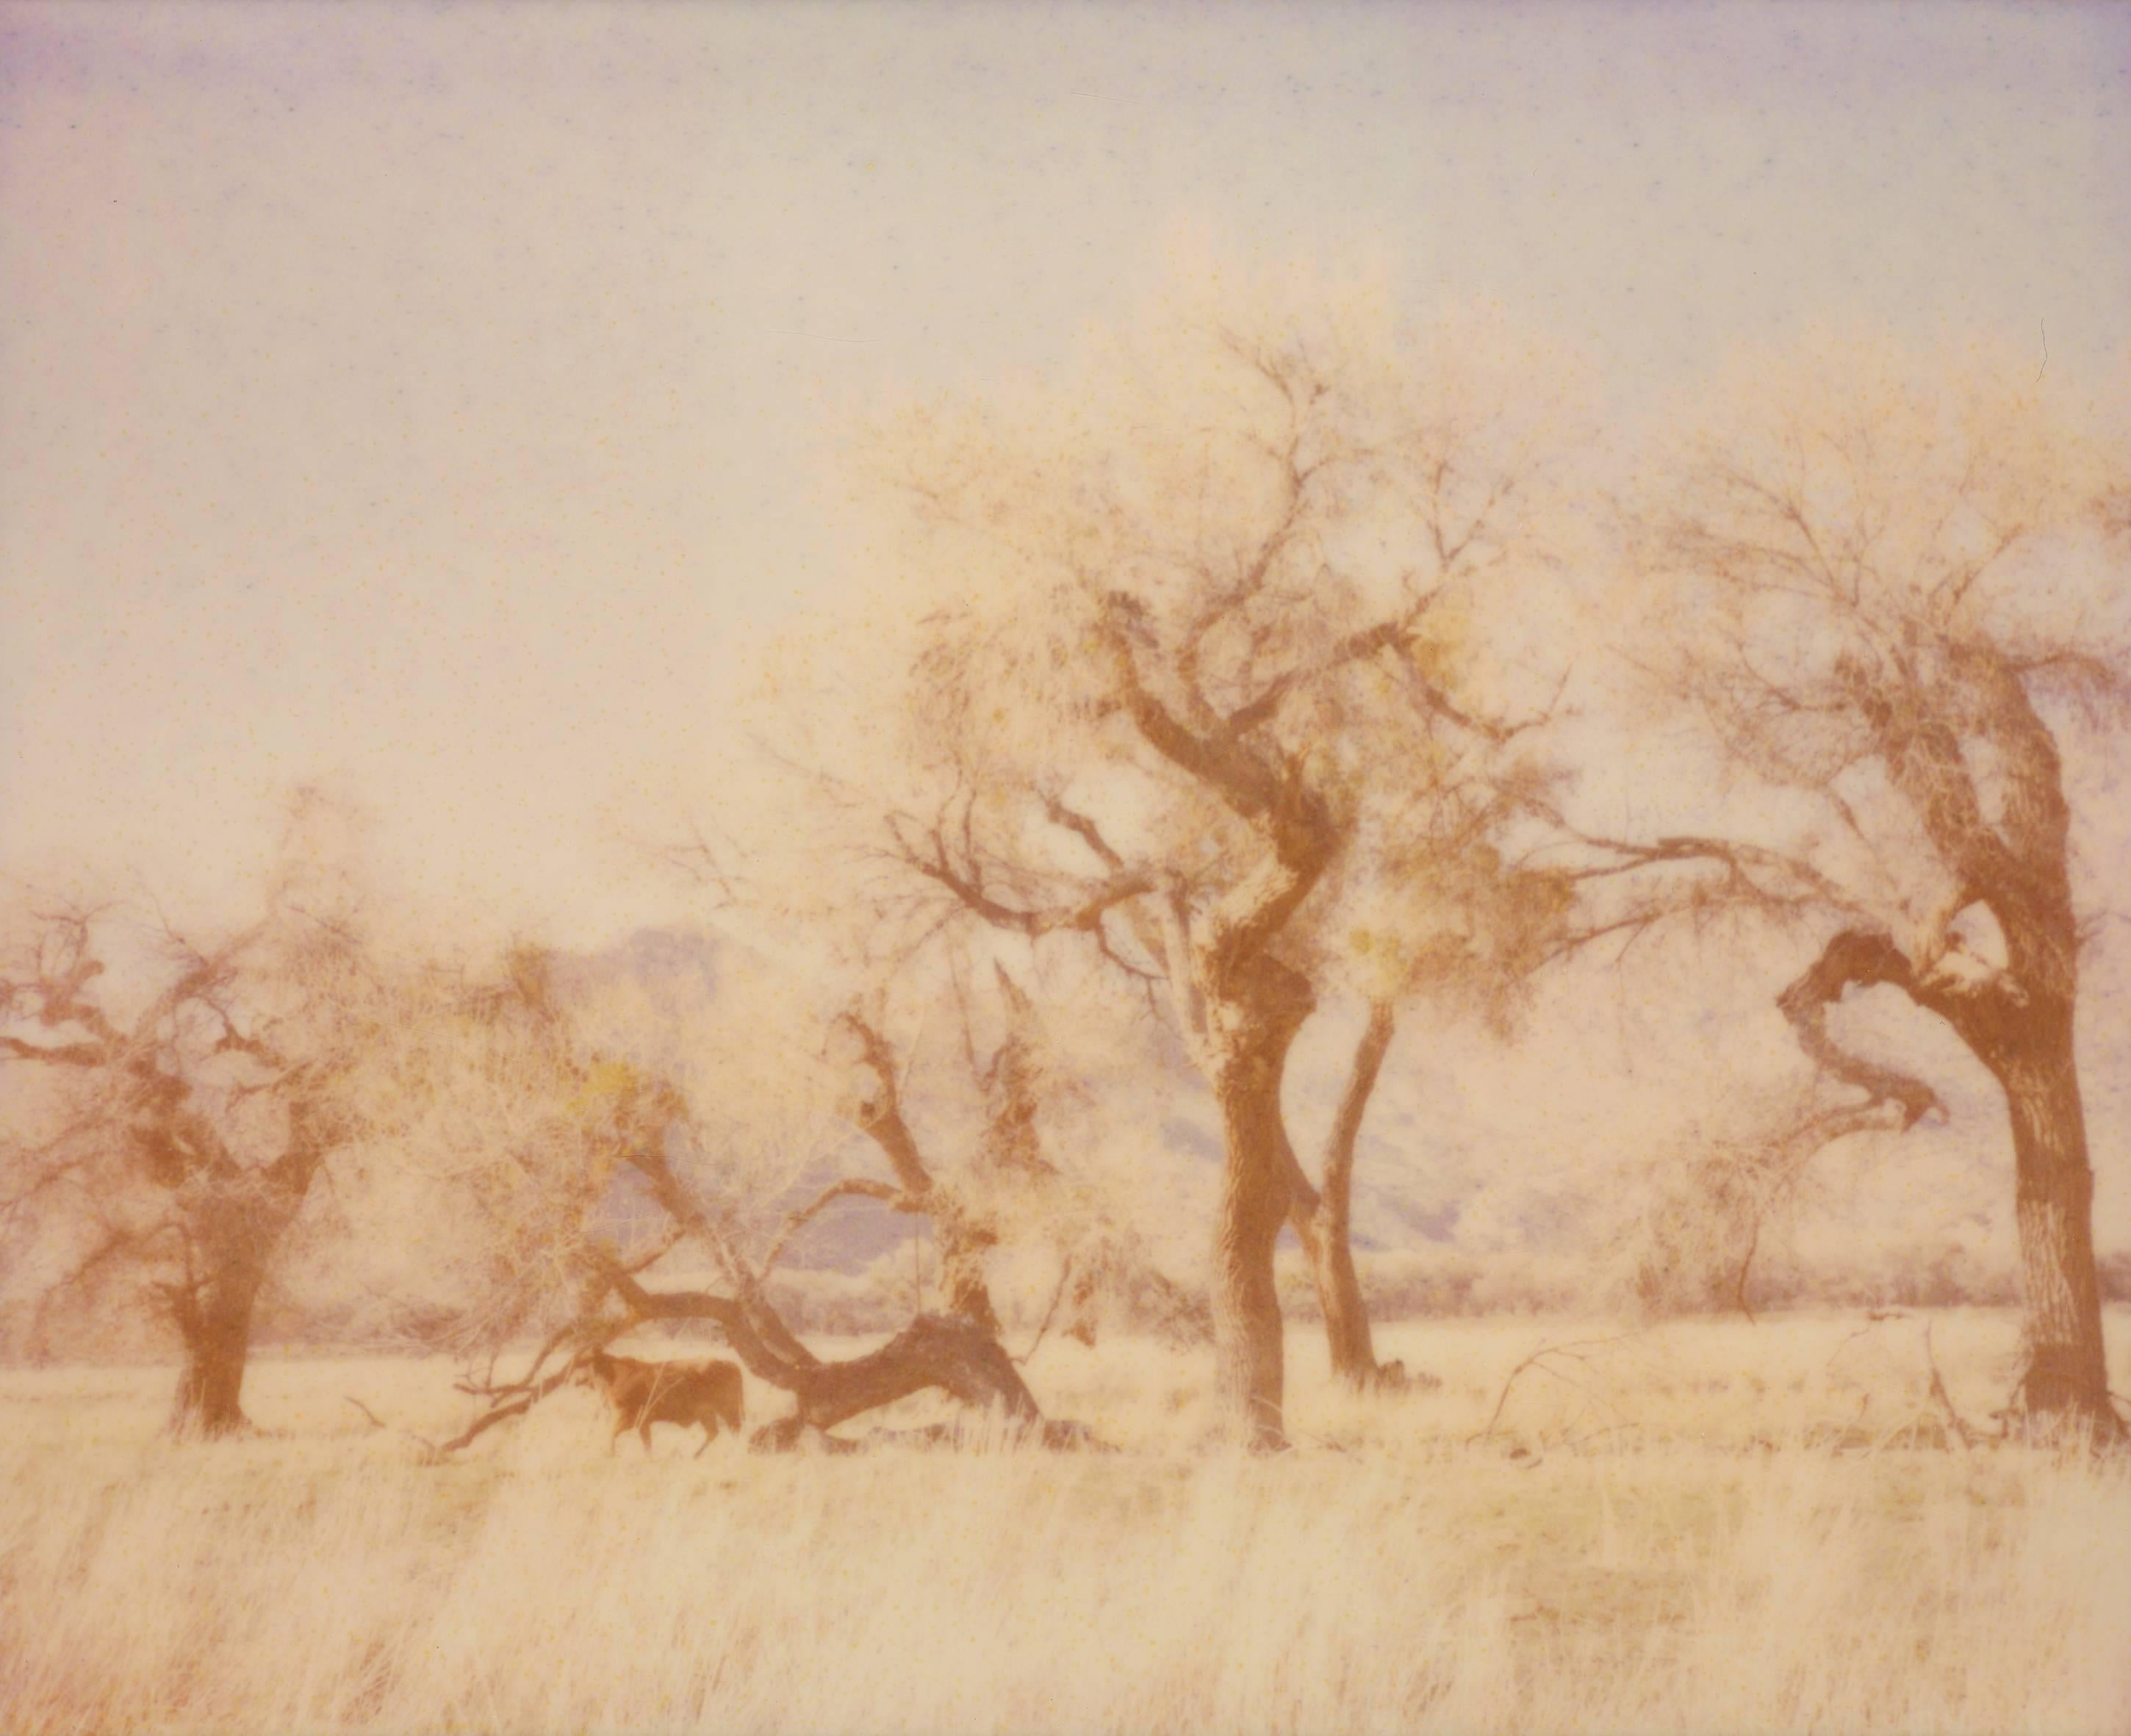 Stefanie Schneider Color Photograph - Dreaming of Buffalo (29 Palms, CA), analog 